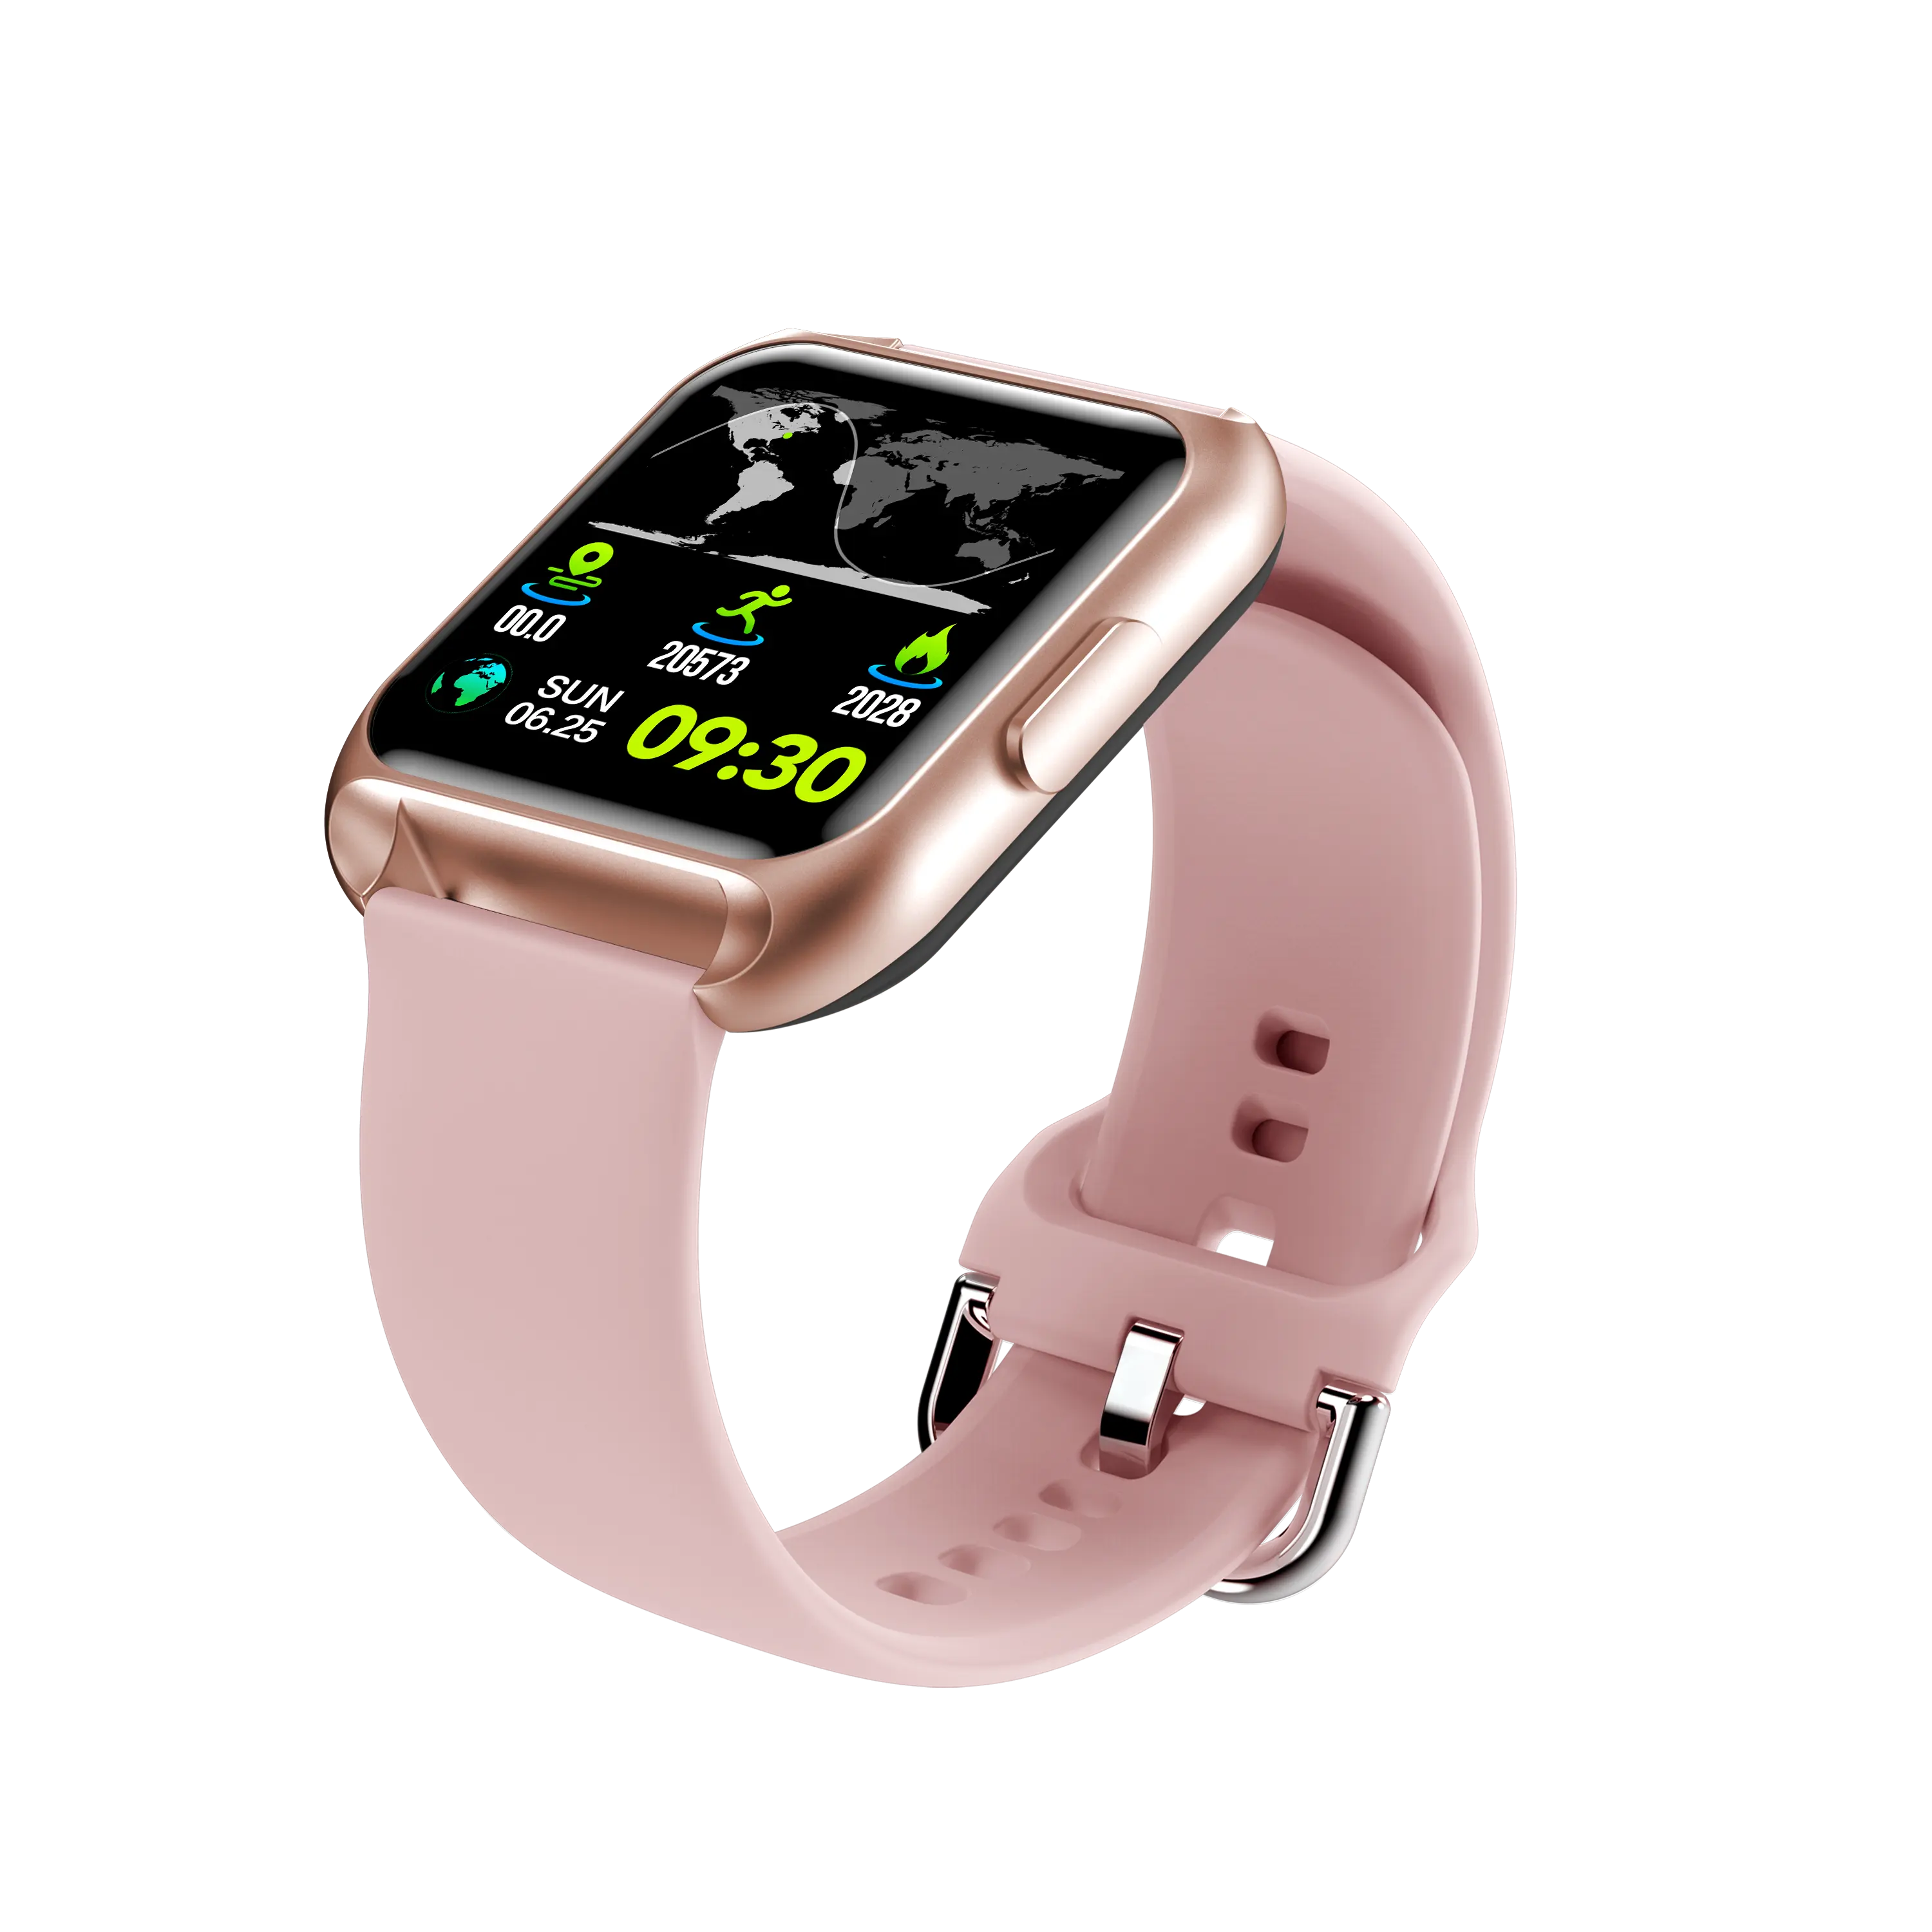 Maxtop นาฬิกาอัจฉริยะสำหรับผู้หญิงและผู้ชาย,หน้าปัดวัดความดันโลหิตสีโรสโกลด์กันน้ำผ่านการตรวจสอบผู้ผลิต ECG สมาร์ทวอทช์สำหรับปี2021